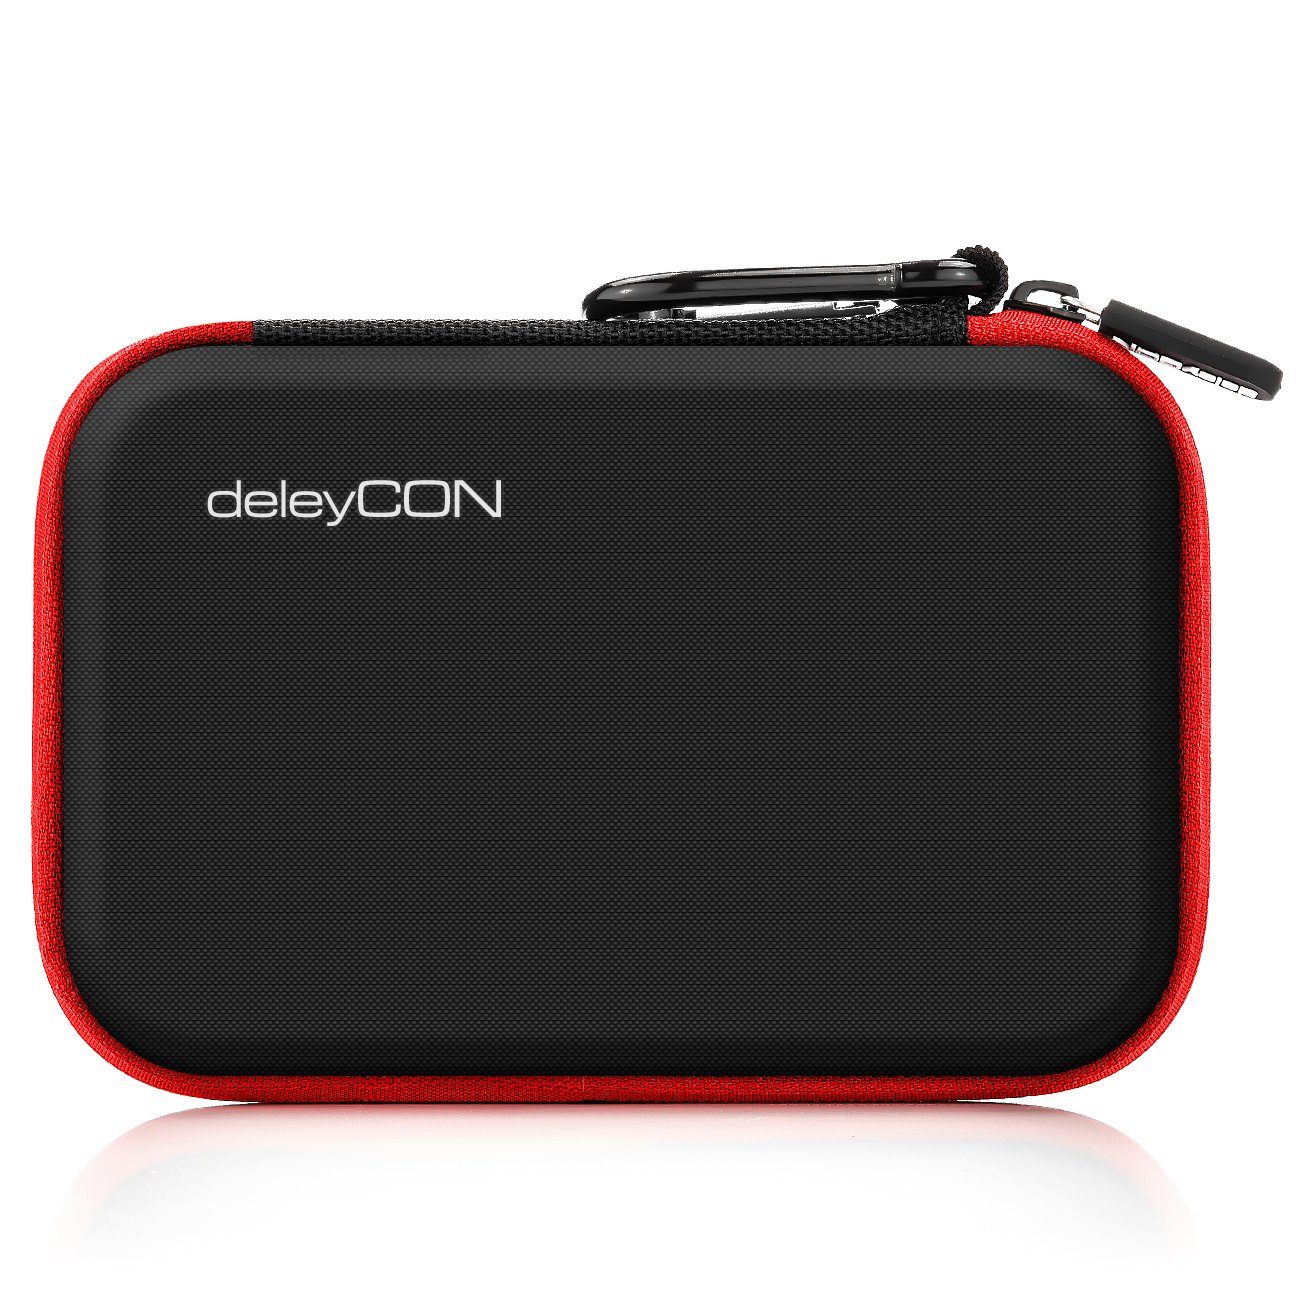 deleyCON Festplattentasche deleyCON Festplattentasche Case Zoll" SSD 2 2,5 für Fächer HDD